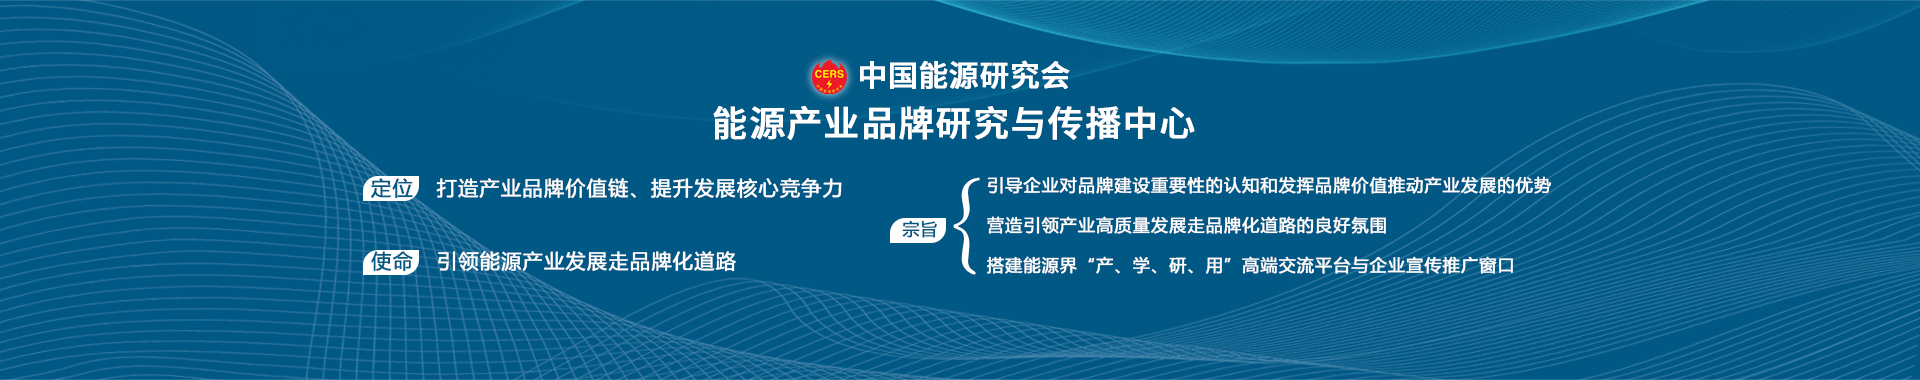 中国能源研究会能源产业品牌研究与传播中心